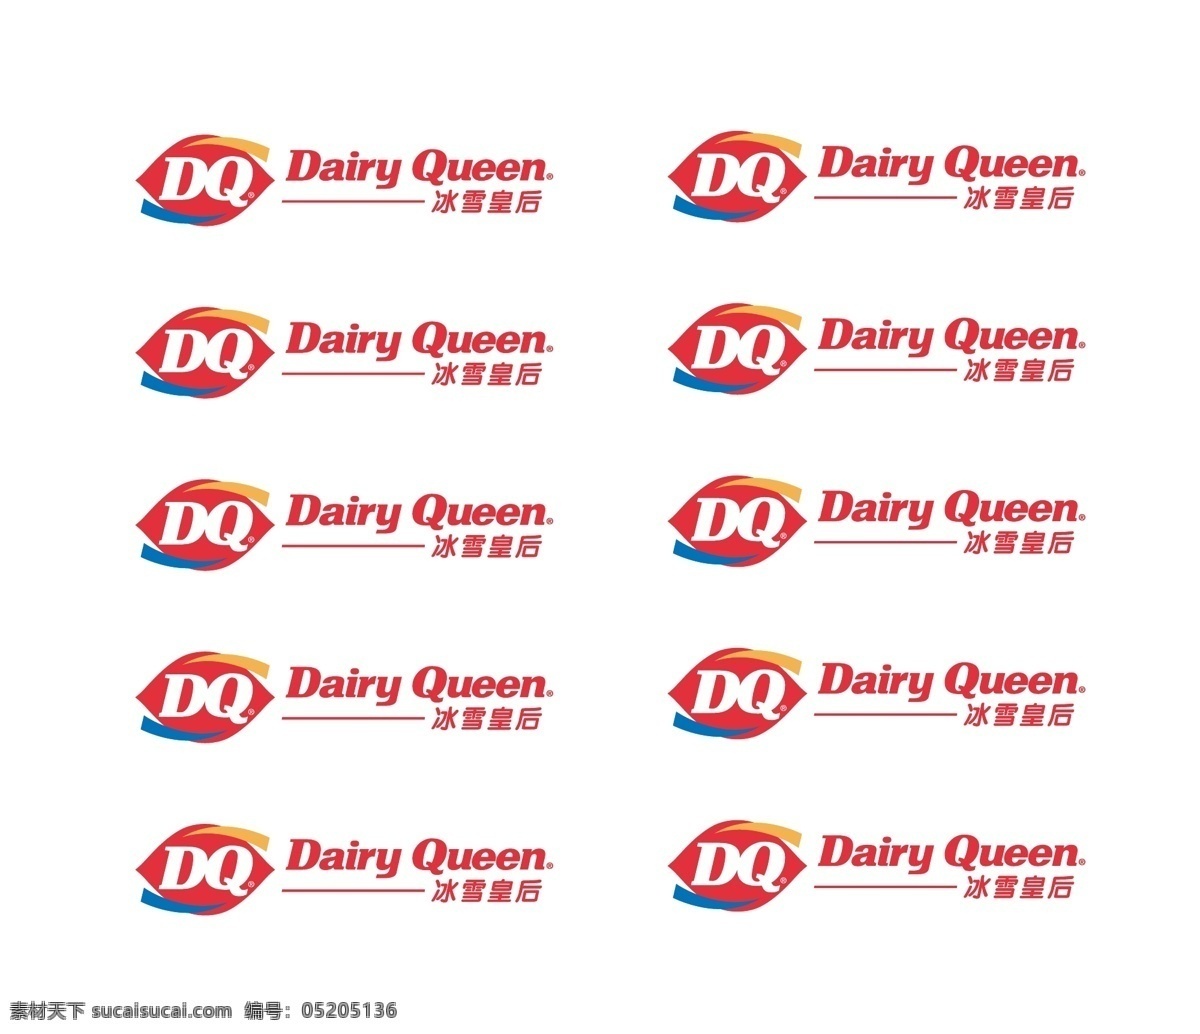 dq冰雪皇后 dq 冰雪 皇后 logo 冰雪皇后 标志logo 企业 标志 标识标志图标 矢量